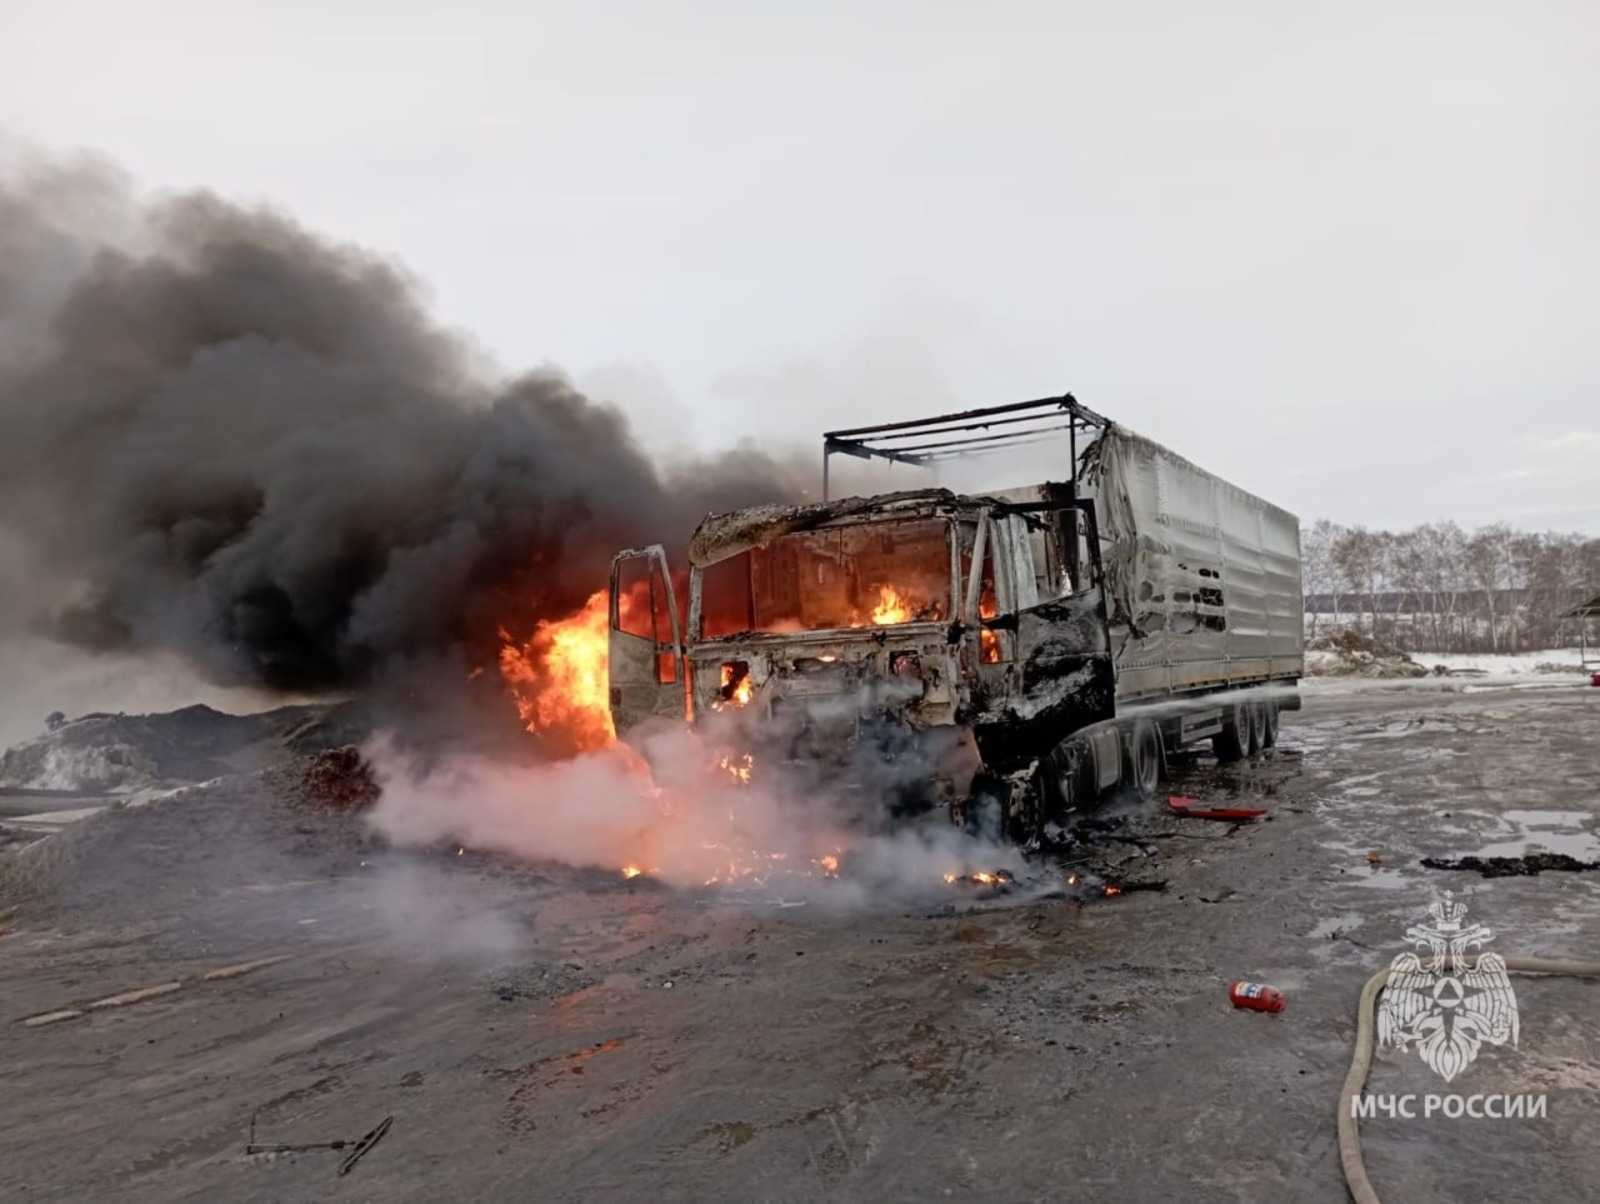 Адское пламя на М-5 в Башкирии: огонь поглотил фуру, водитель получил ожоги